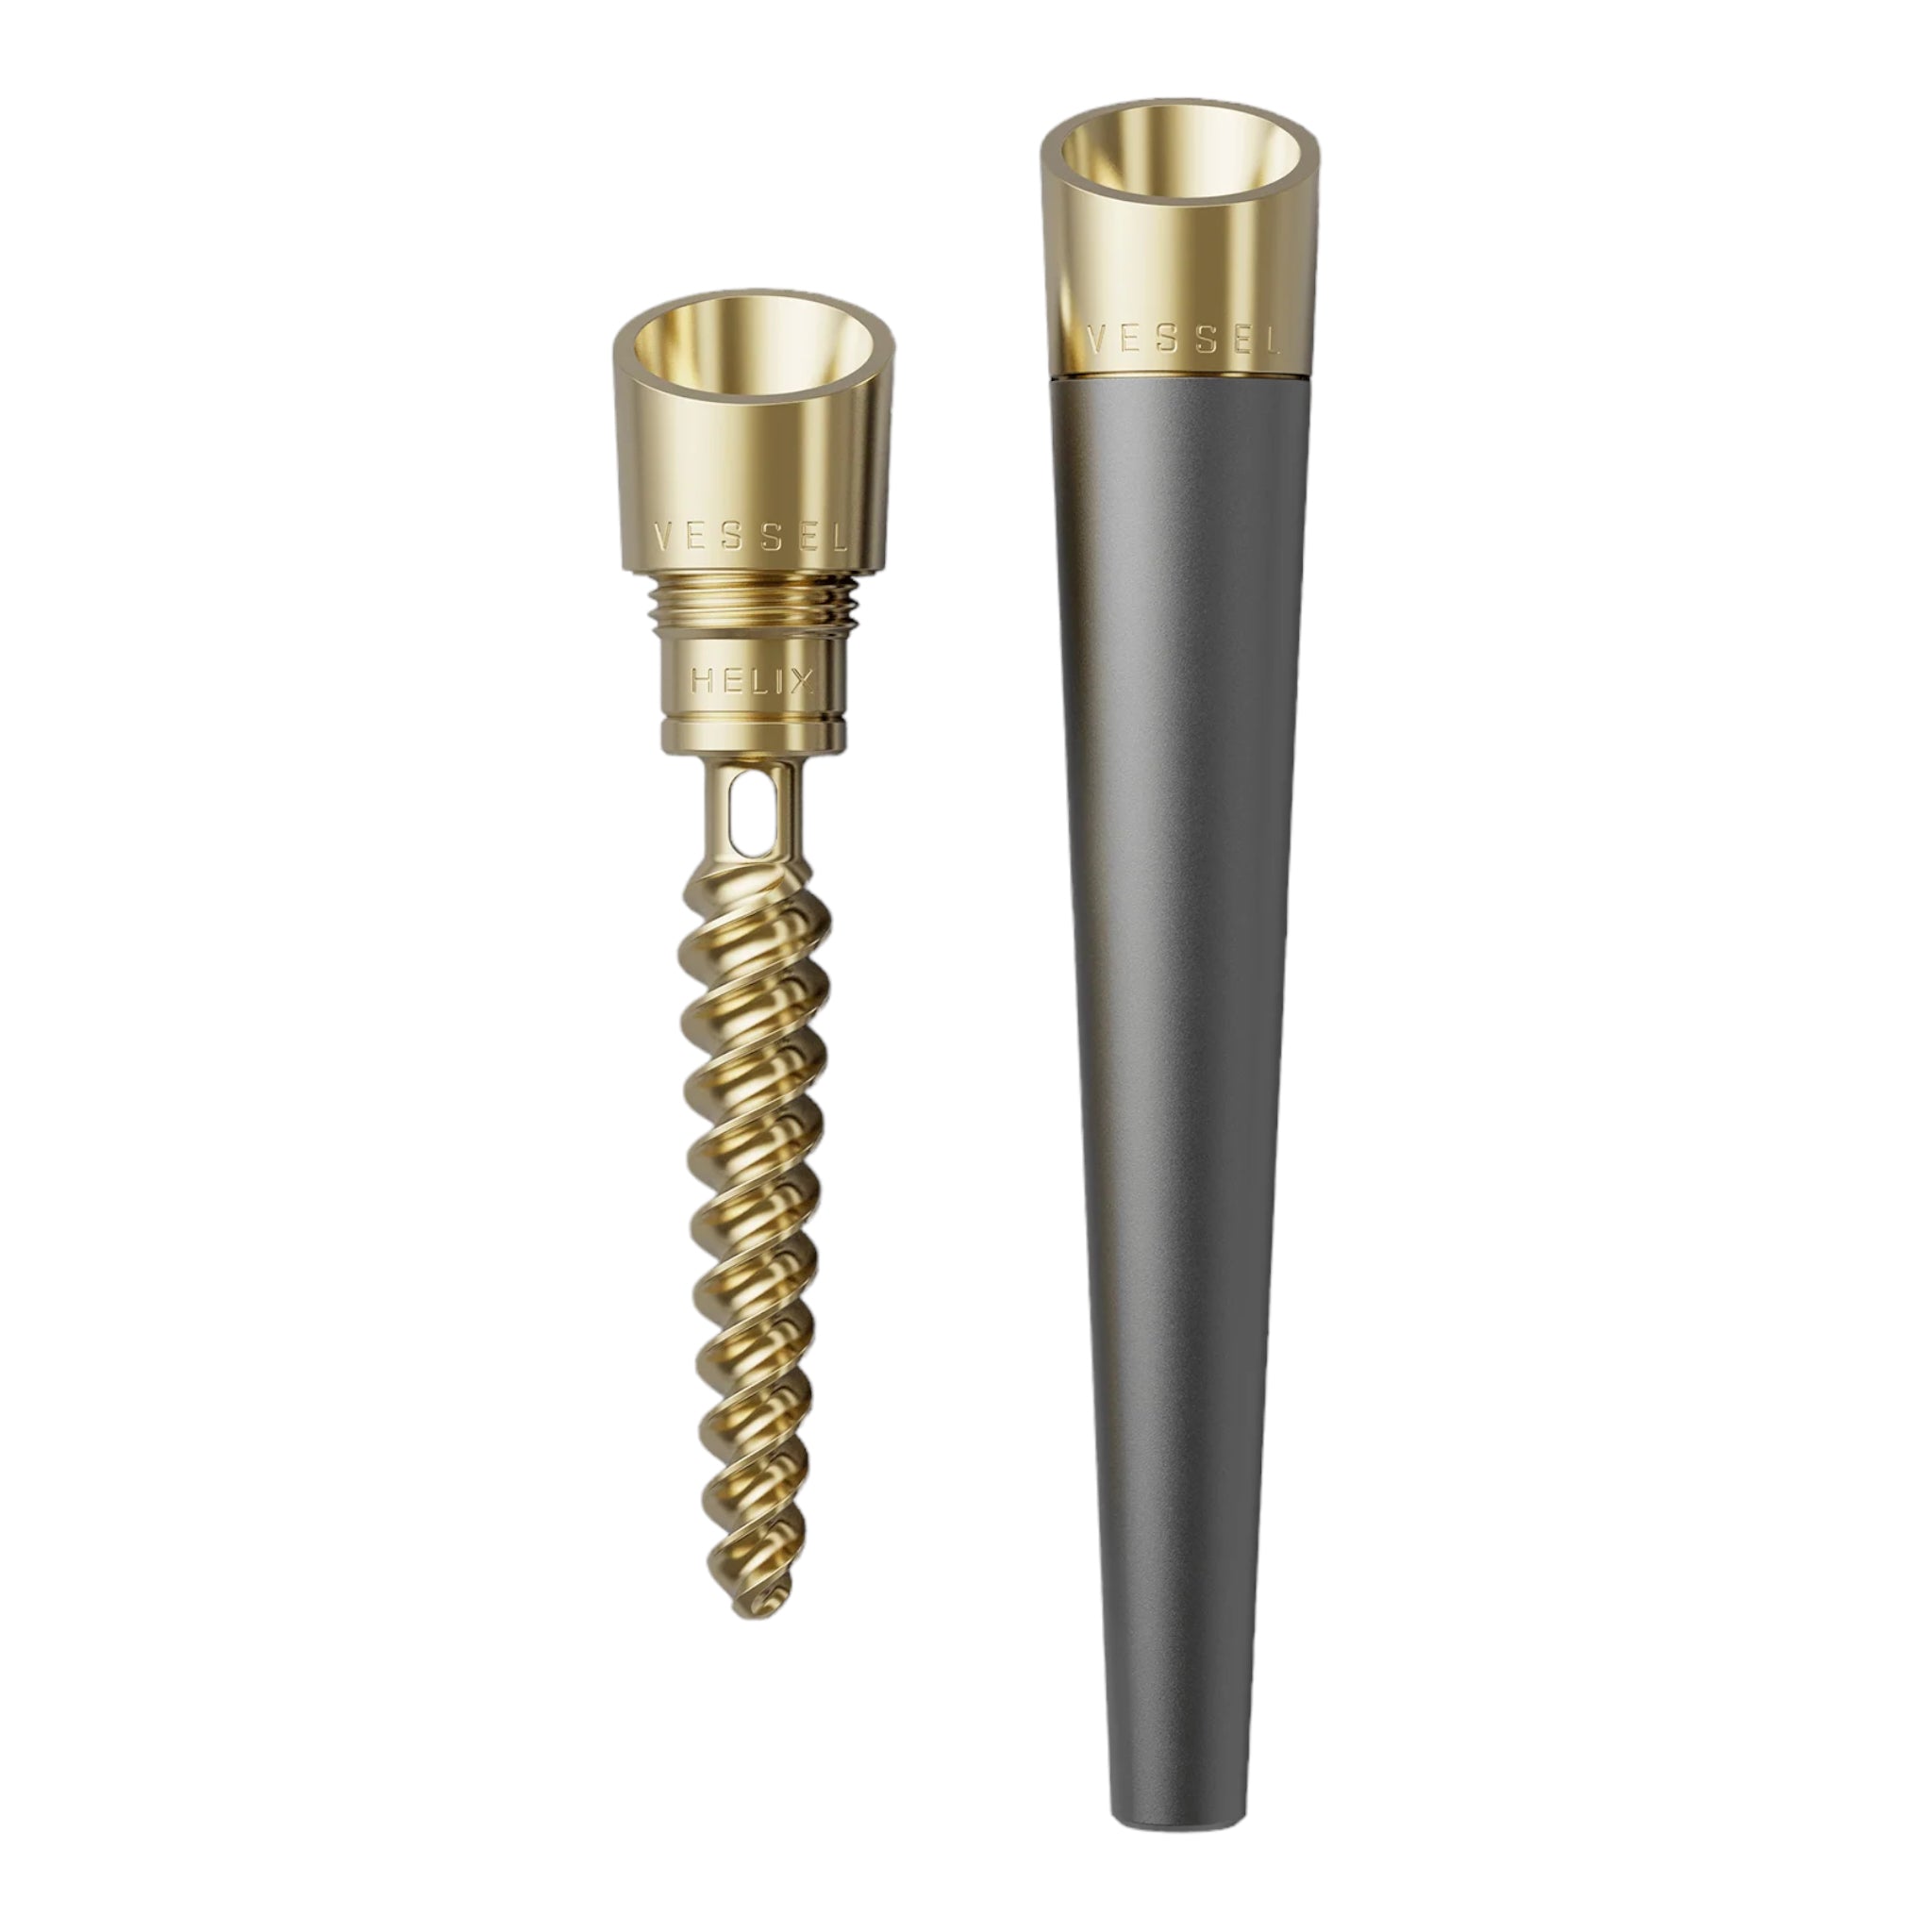 Vessel - Cone Helix Series Metal Hand Pipe Gunmetal